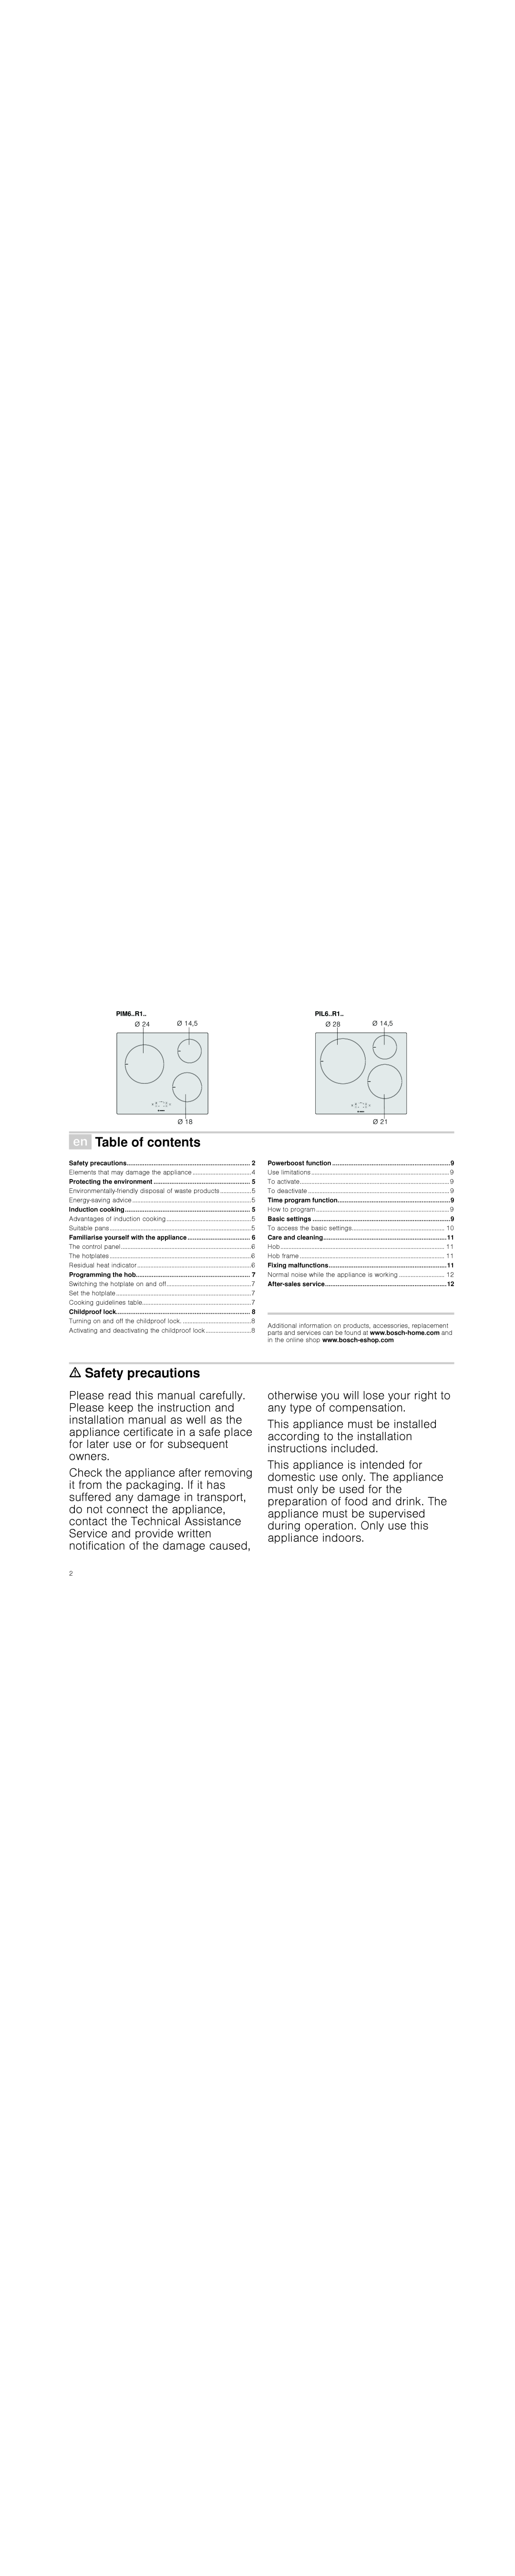 Bosch Appliances PIL6..R1, PIM6..R1 instruction manual ÚTable of contents, ã=Safety precautions 